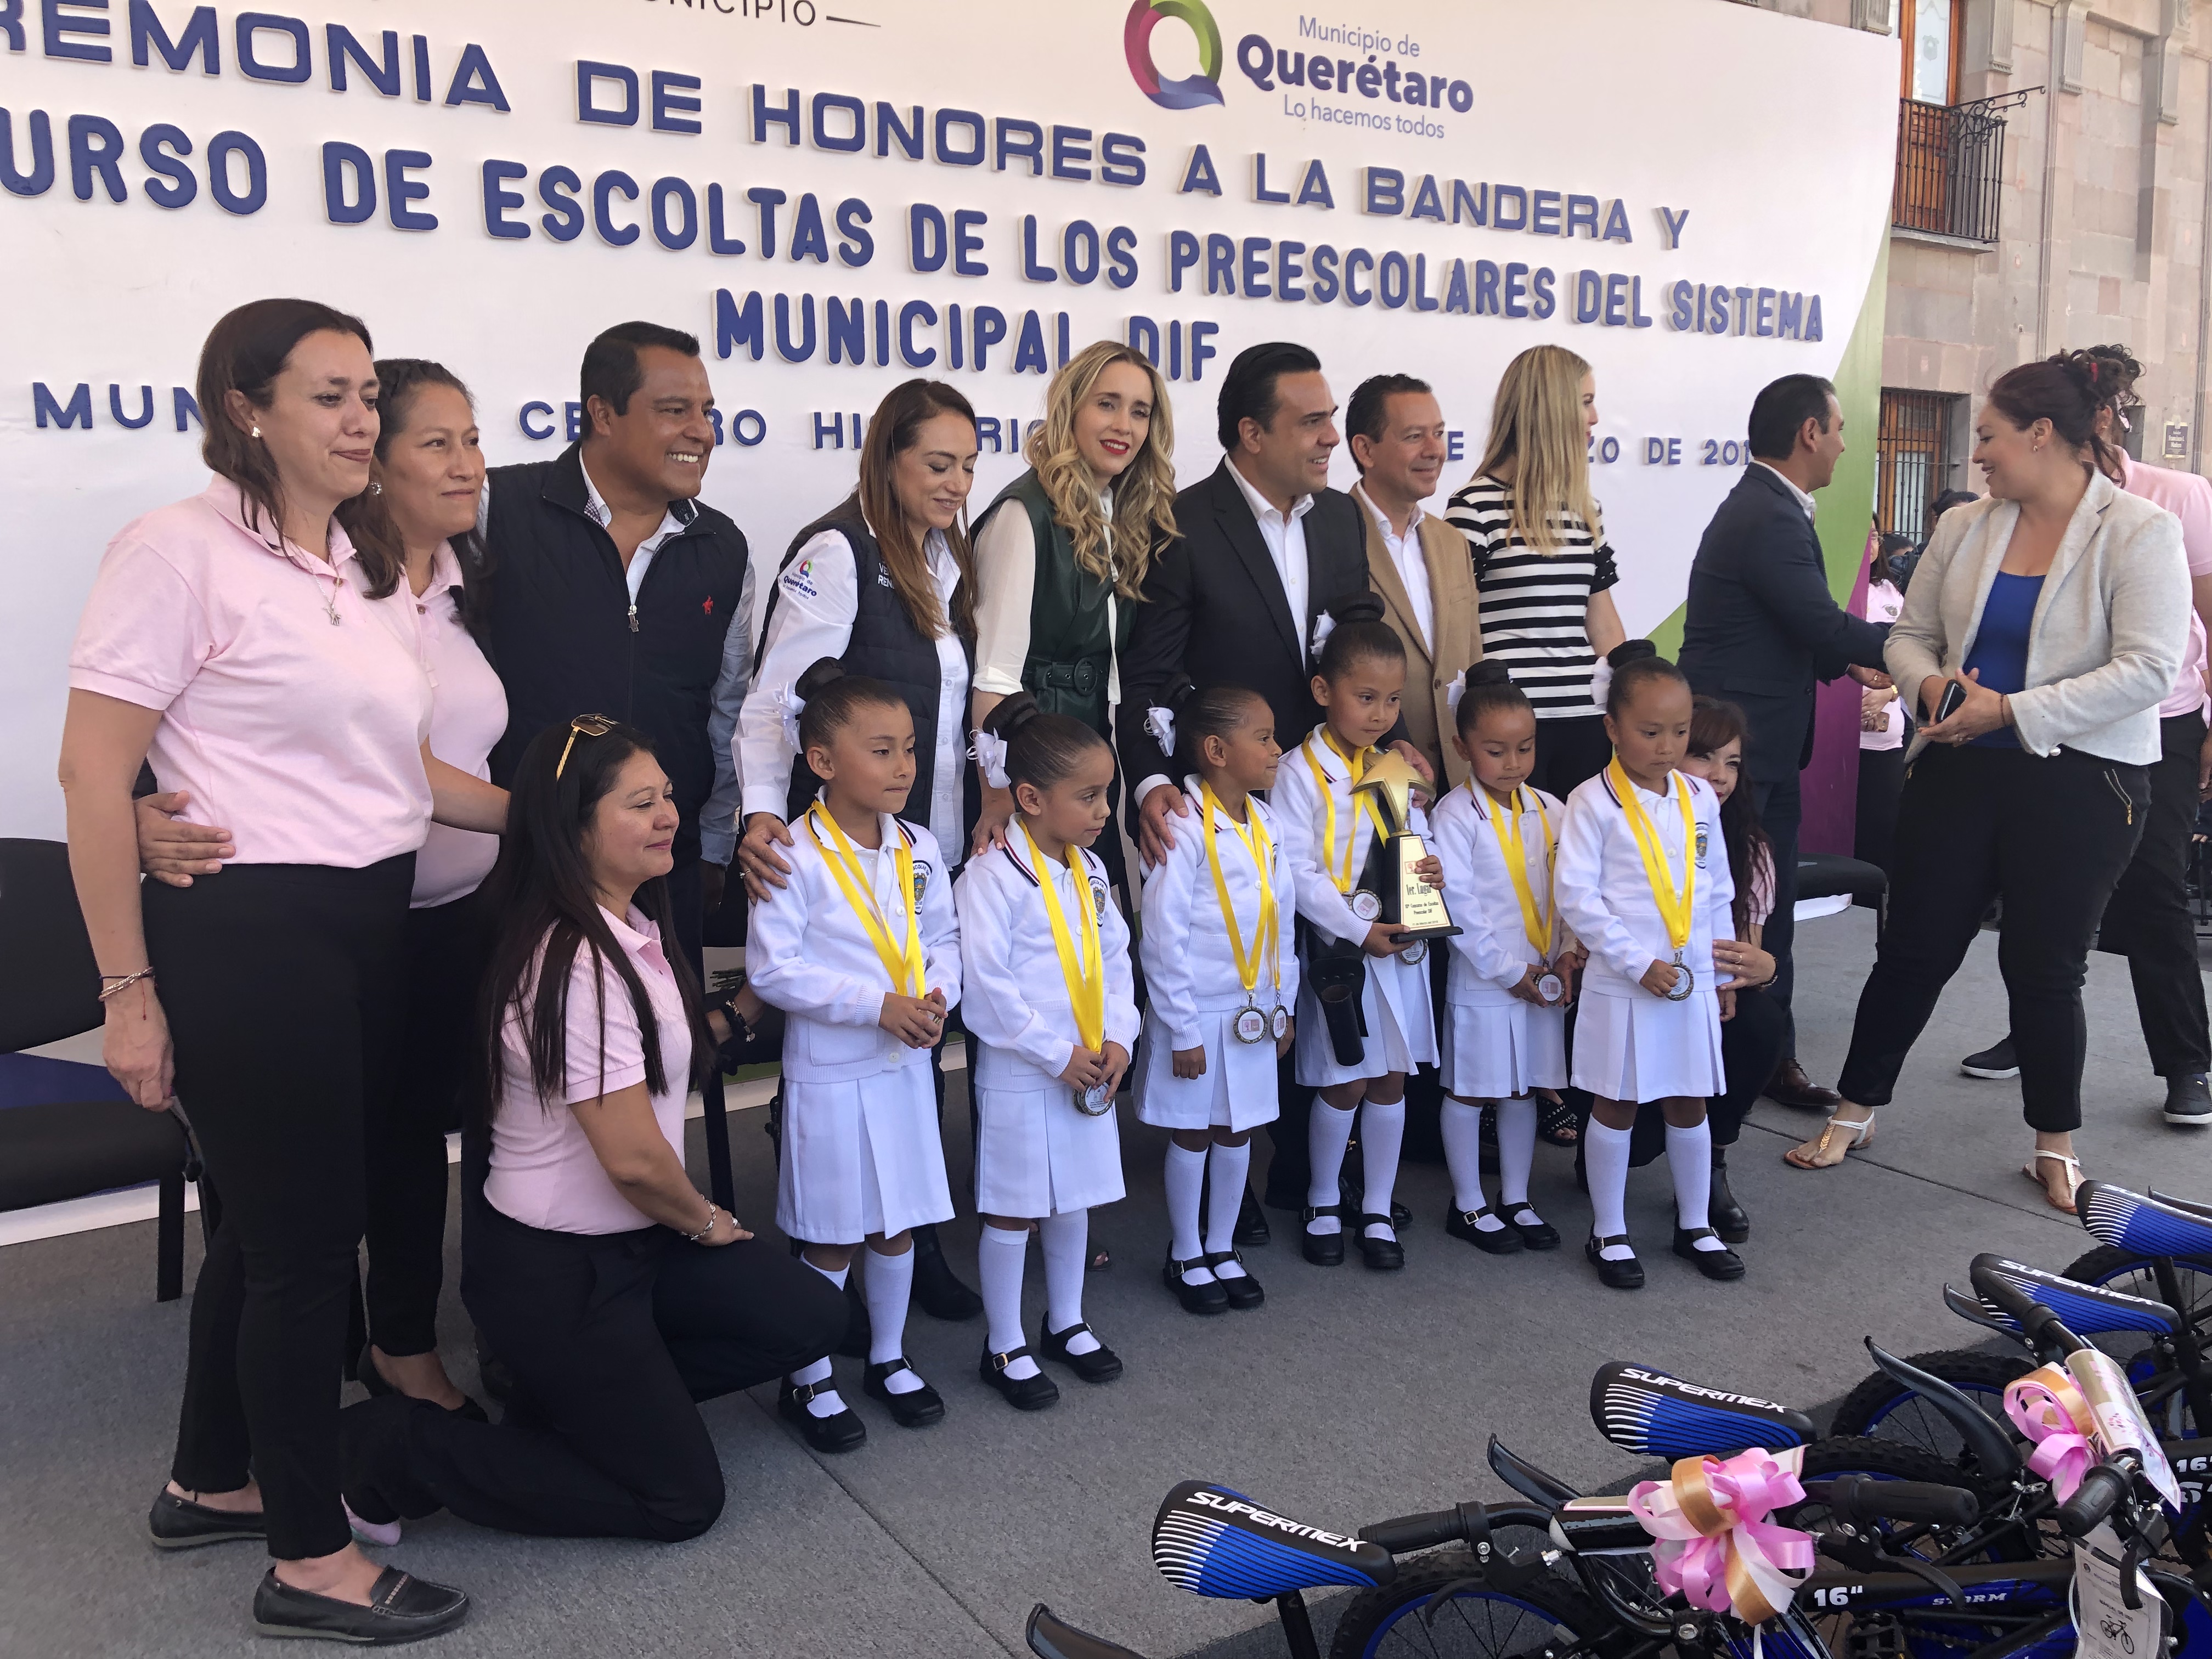  Premian a preescolares del sistema municipal DIF en 10° concurso de escoltas